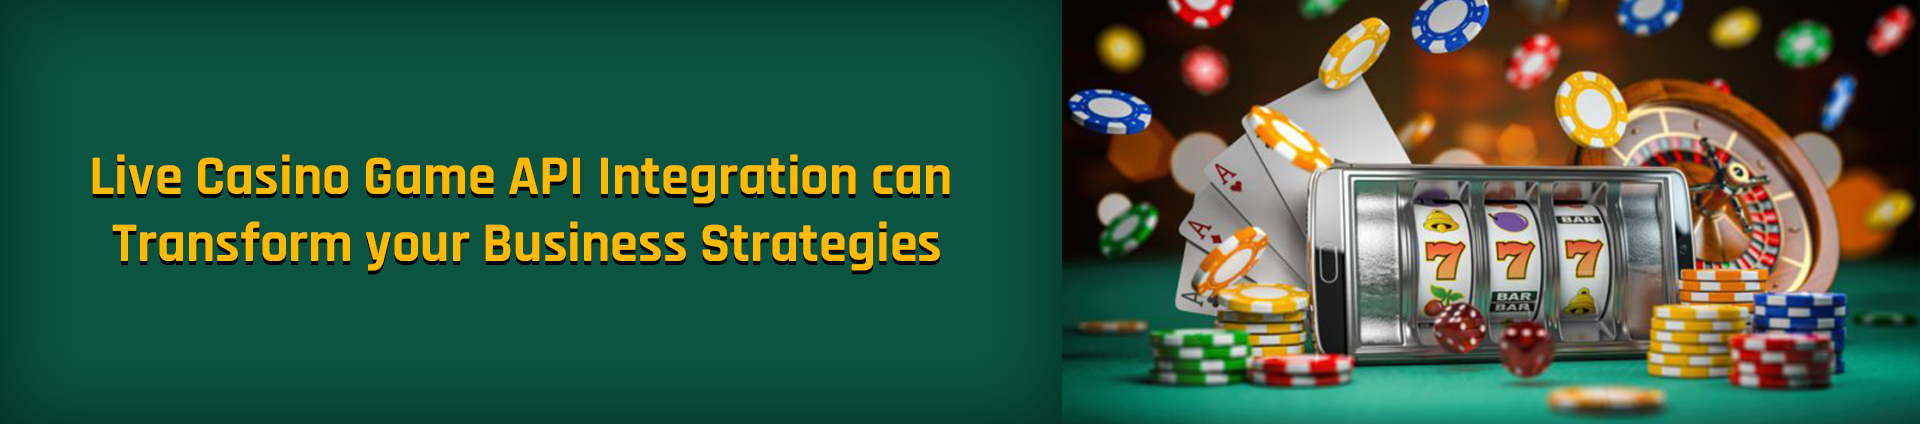 Live Casino Game API Integration